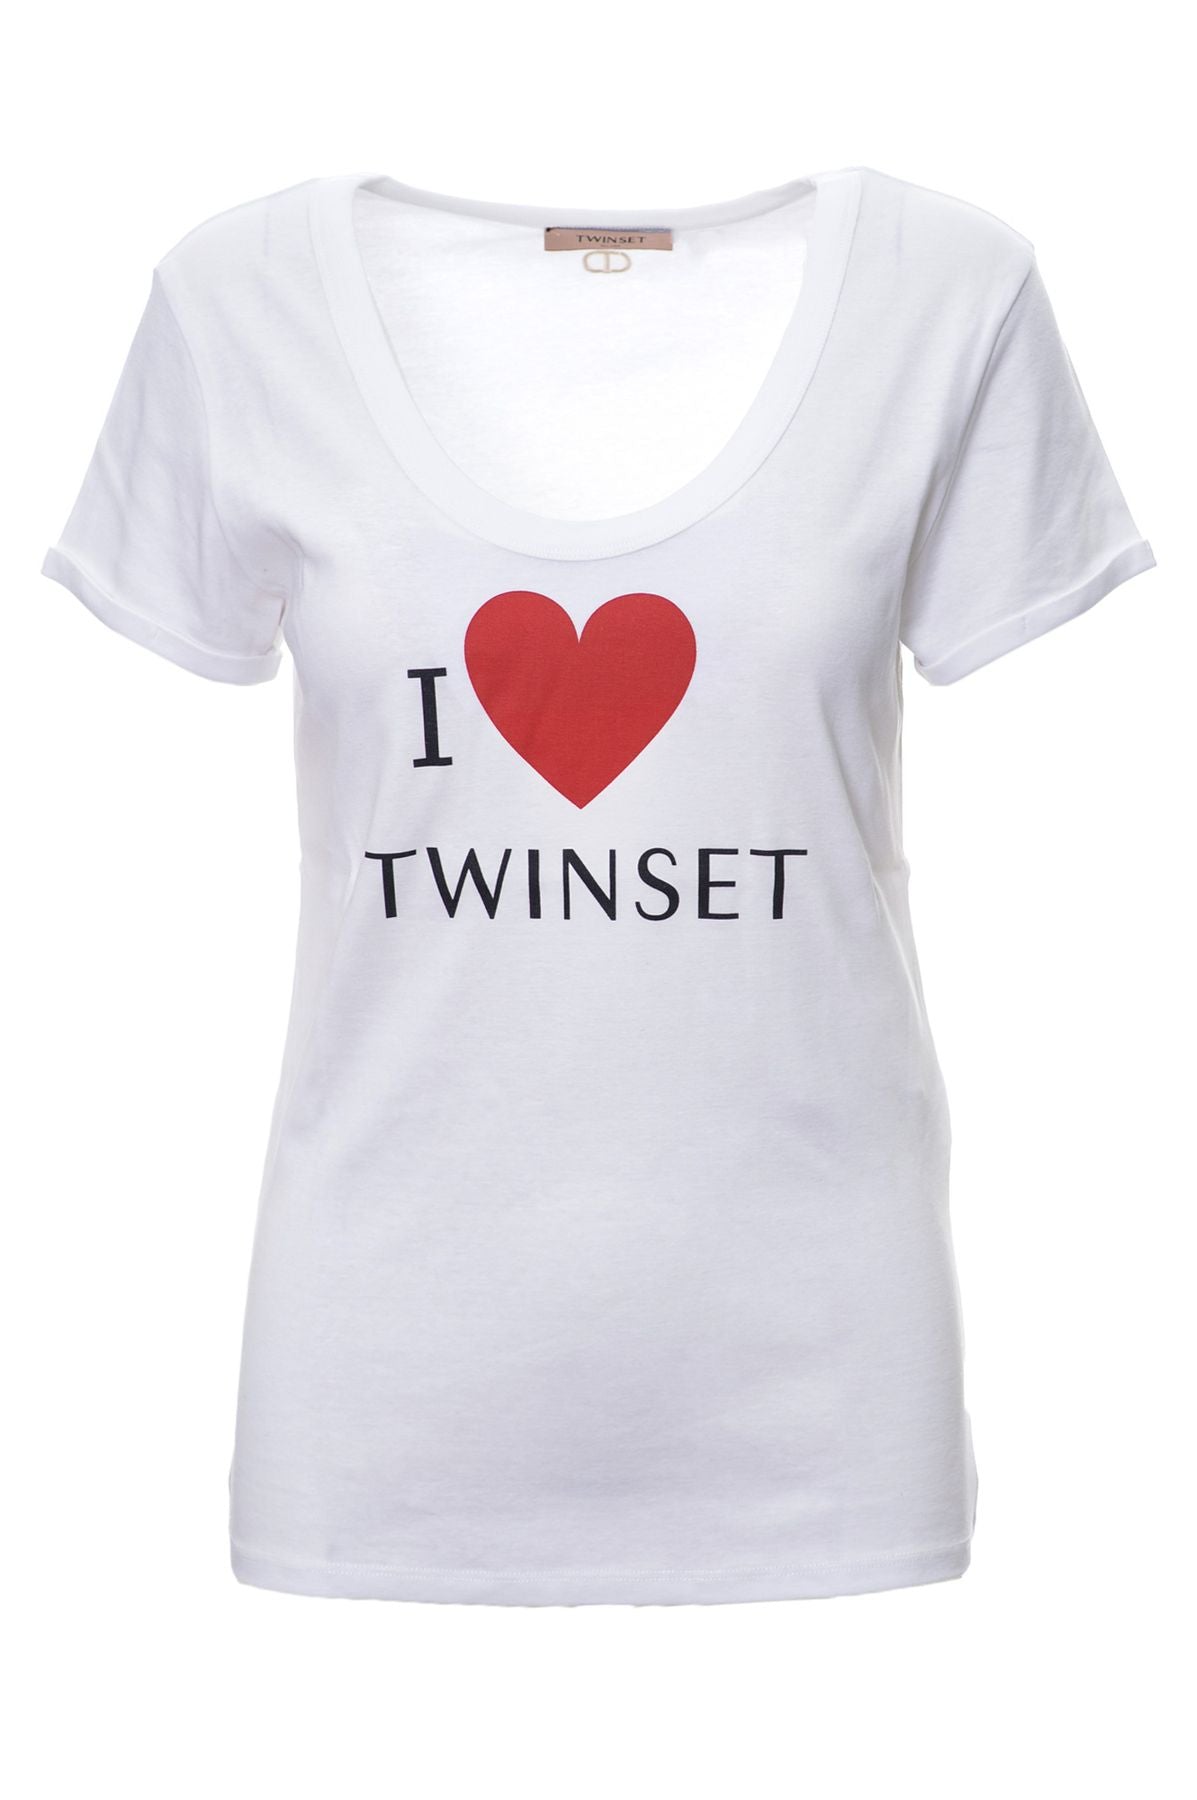 TWIN-SET Camiseta Algodón Primavera/Verano